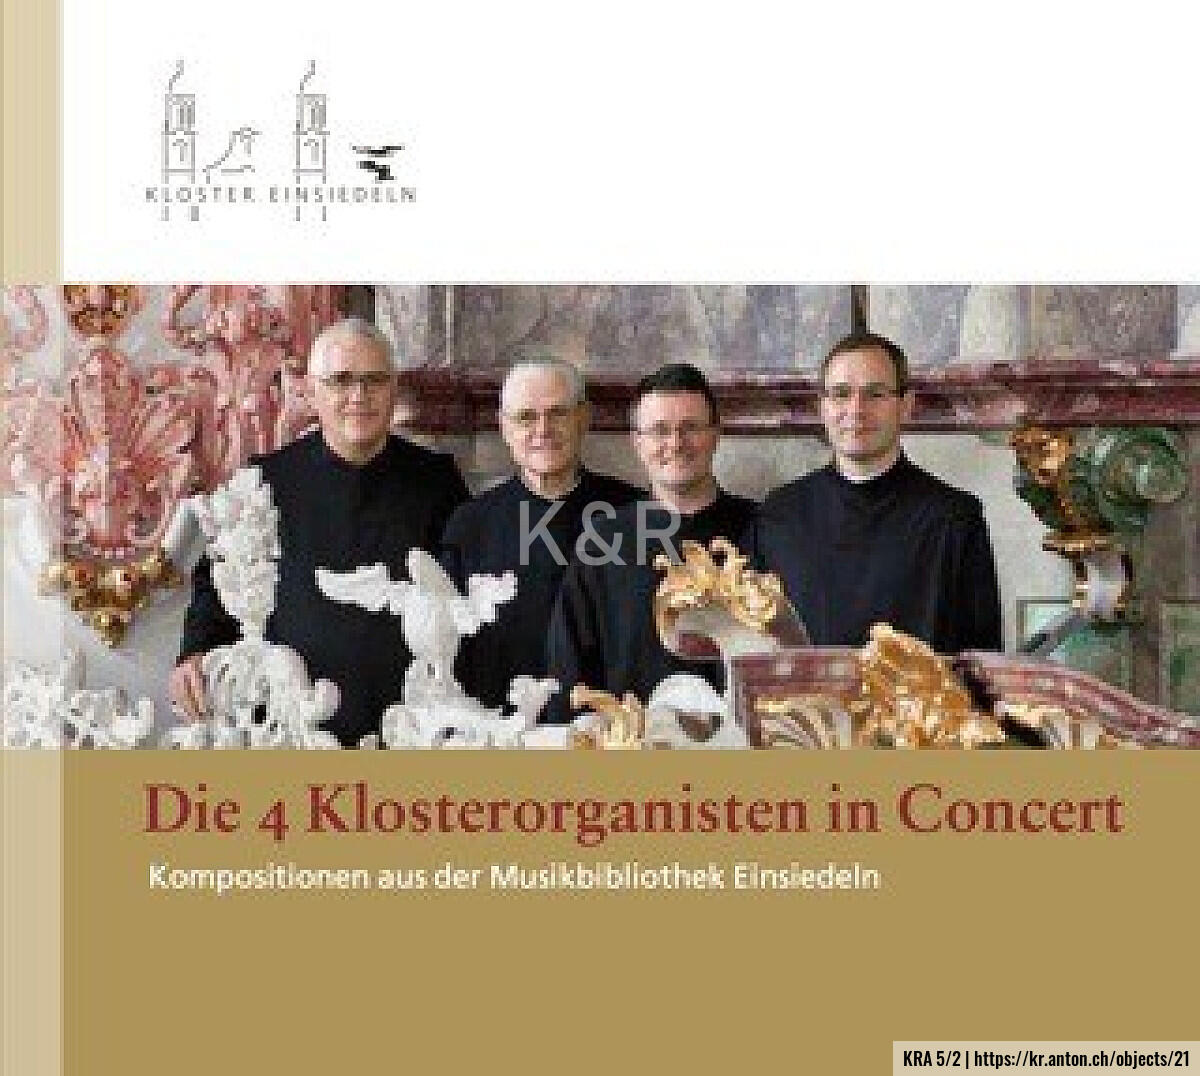 KRA 5/2: Die 4 Klosterorganisten in Concert. Kompositionen aus der Musikbibliothek Einsiedeln